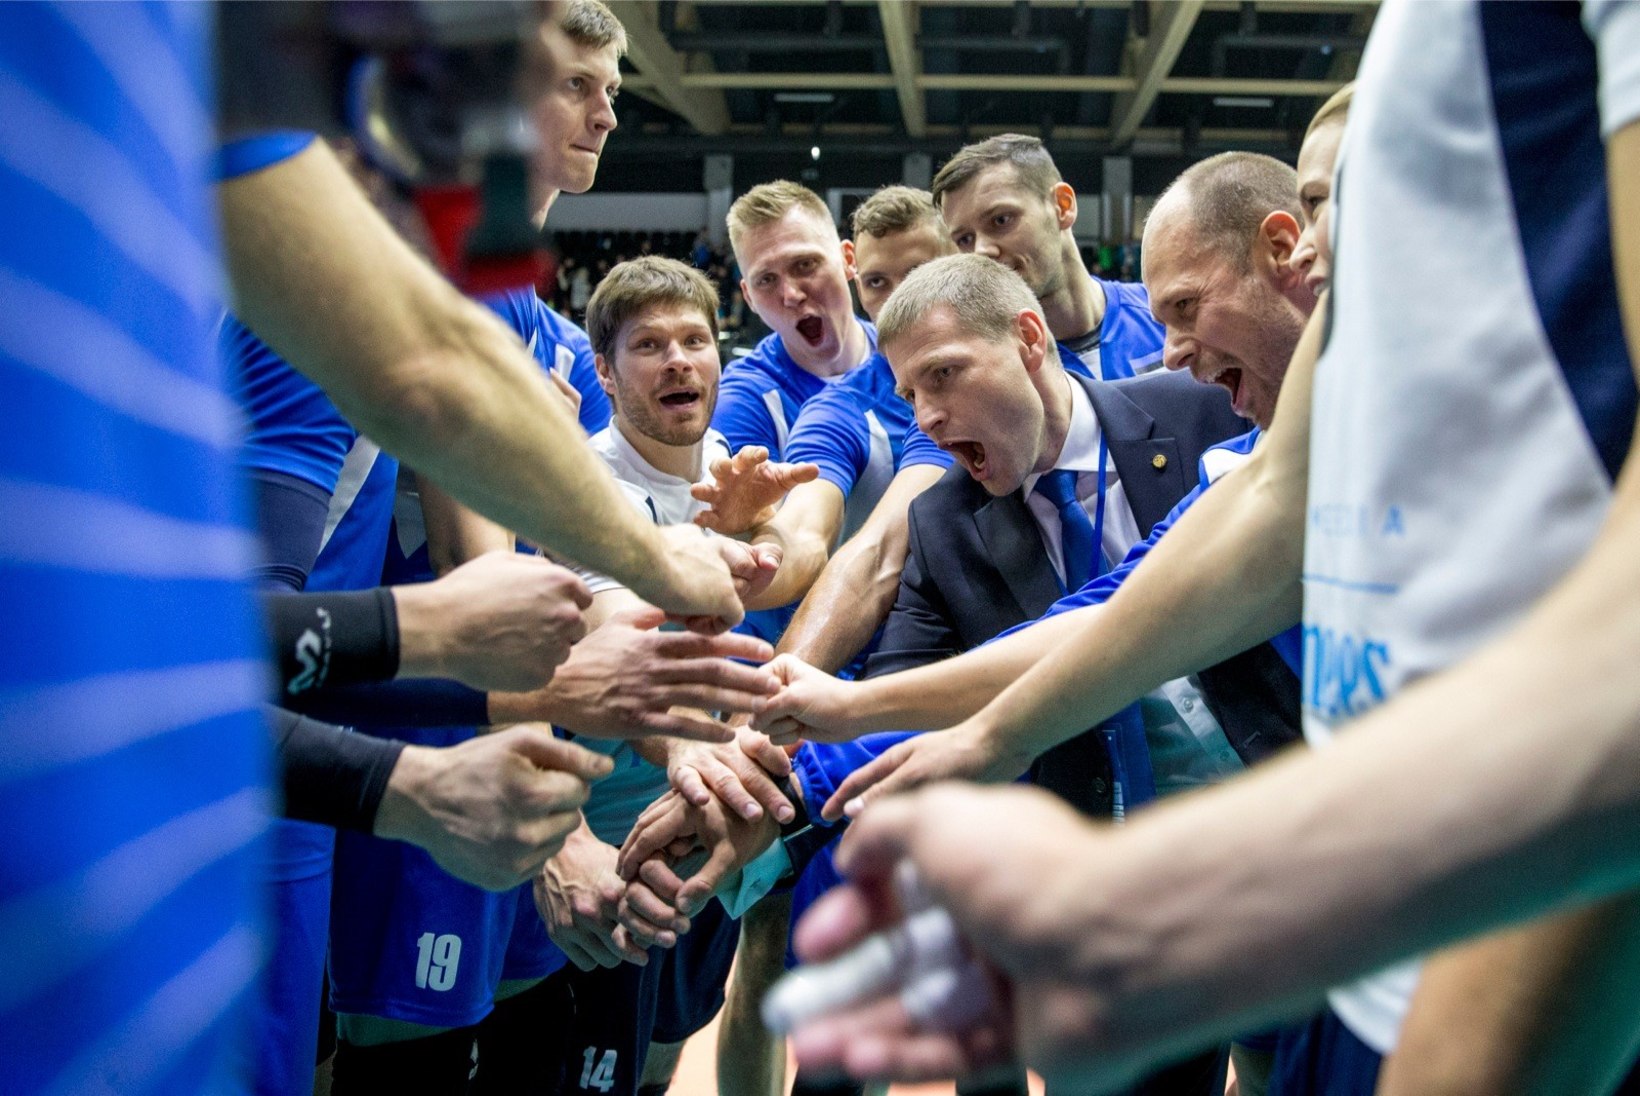 ÄRA MAGA MAHA! Eesti võrkpallikoondise mängupiletid Poolas toimuvale EMile lähevad kaubaks nagu soojad saiad